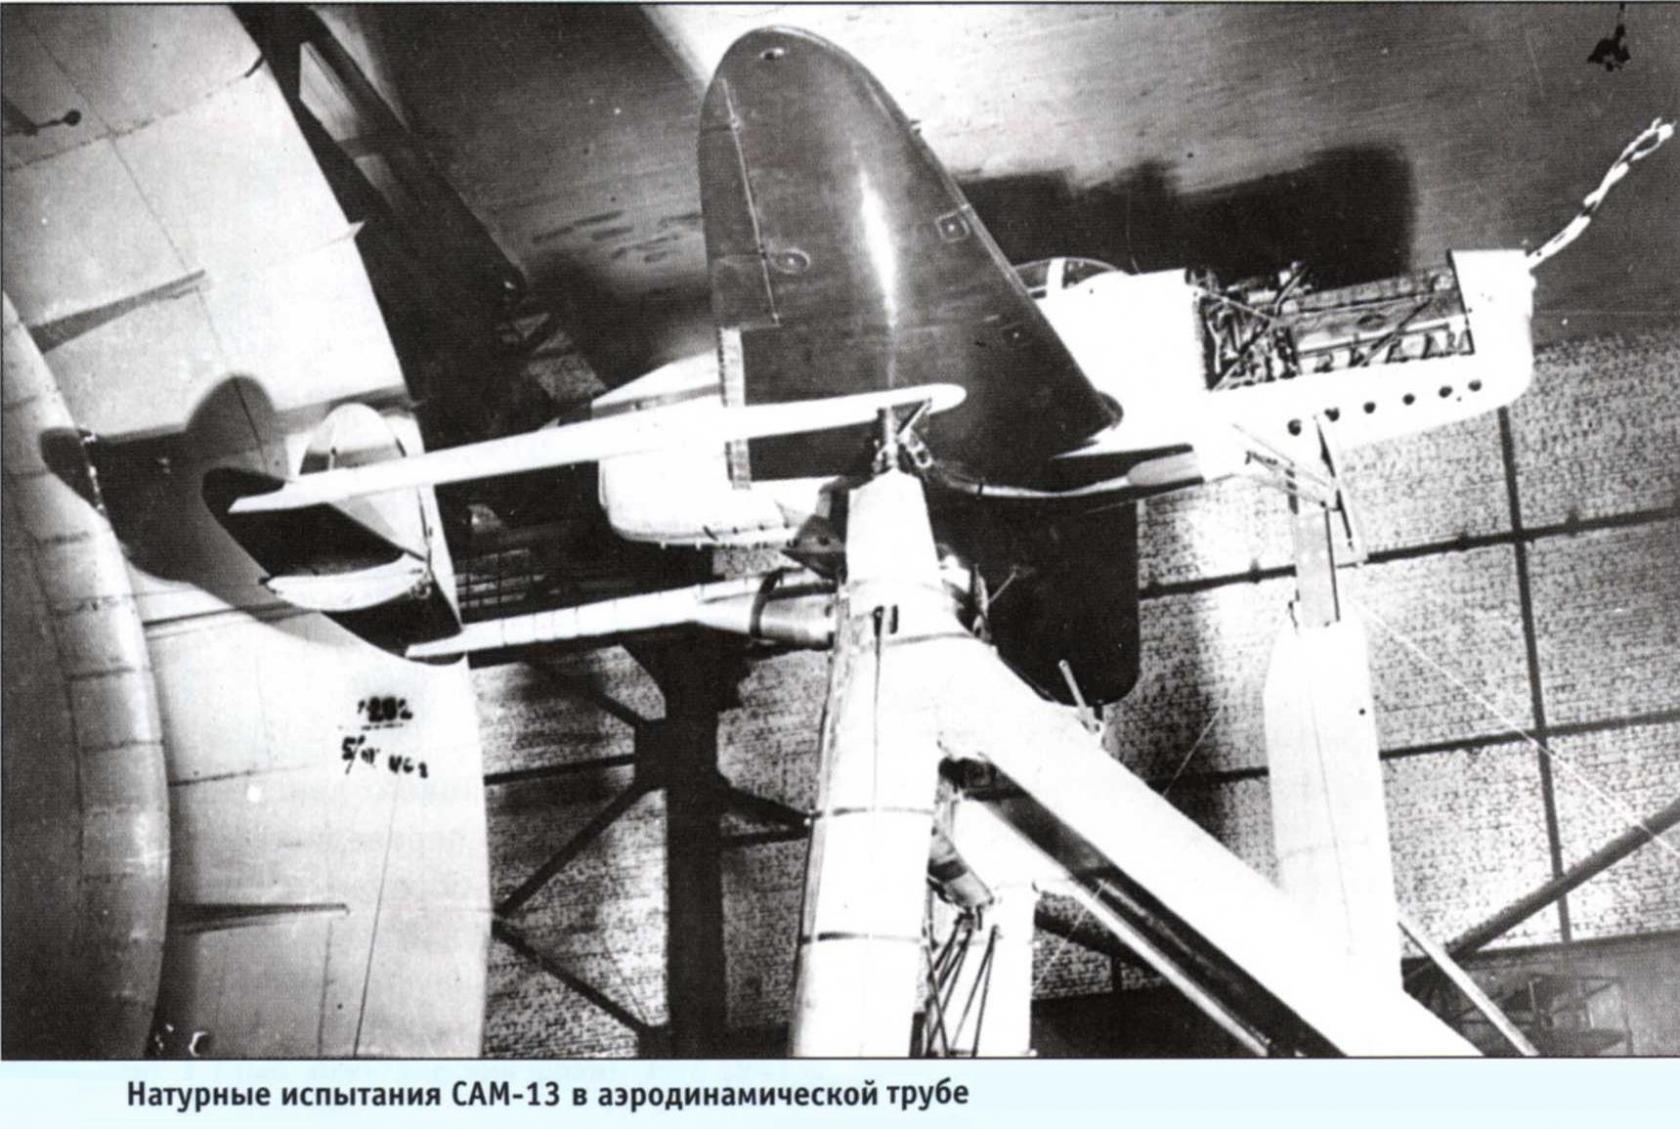 Опытный легкий истребитель САМ-13. СССР